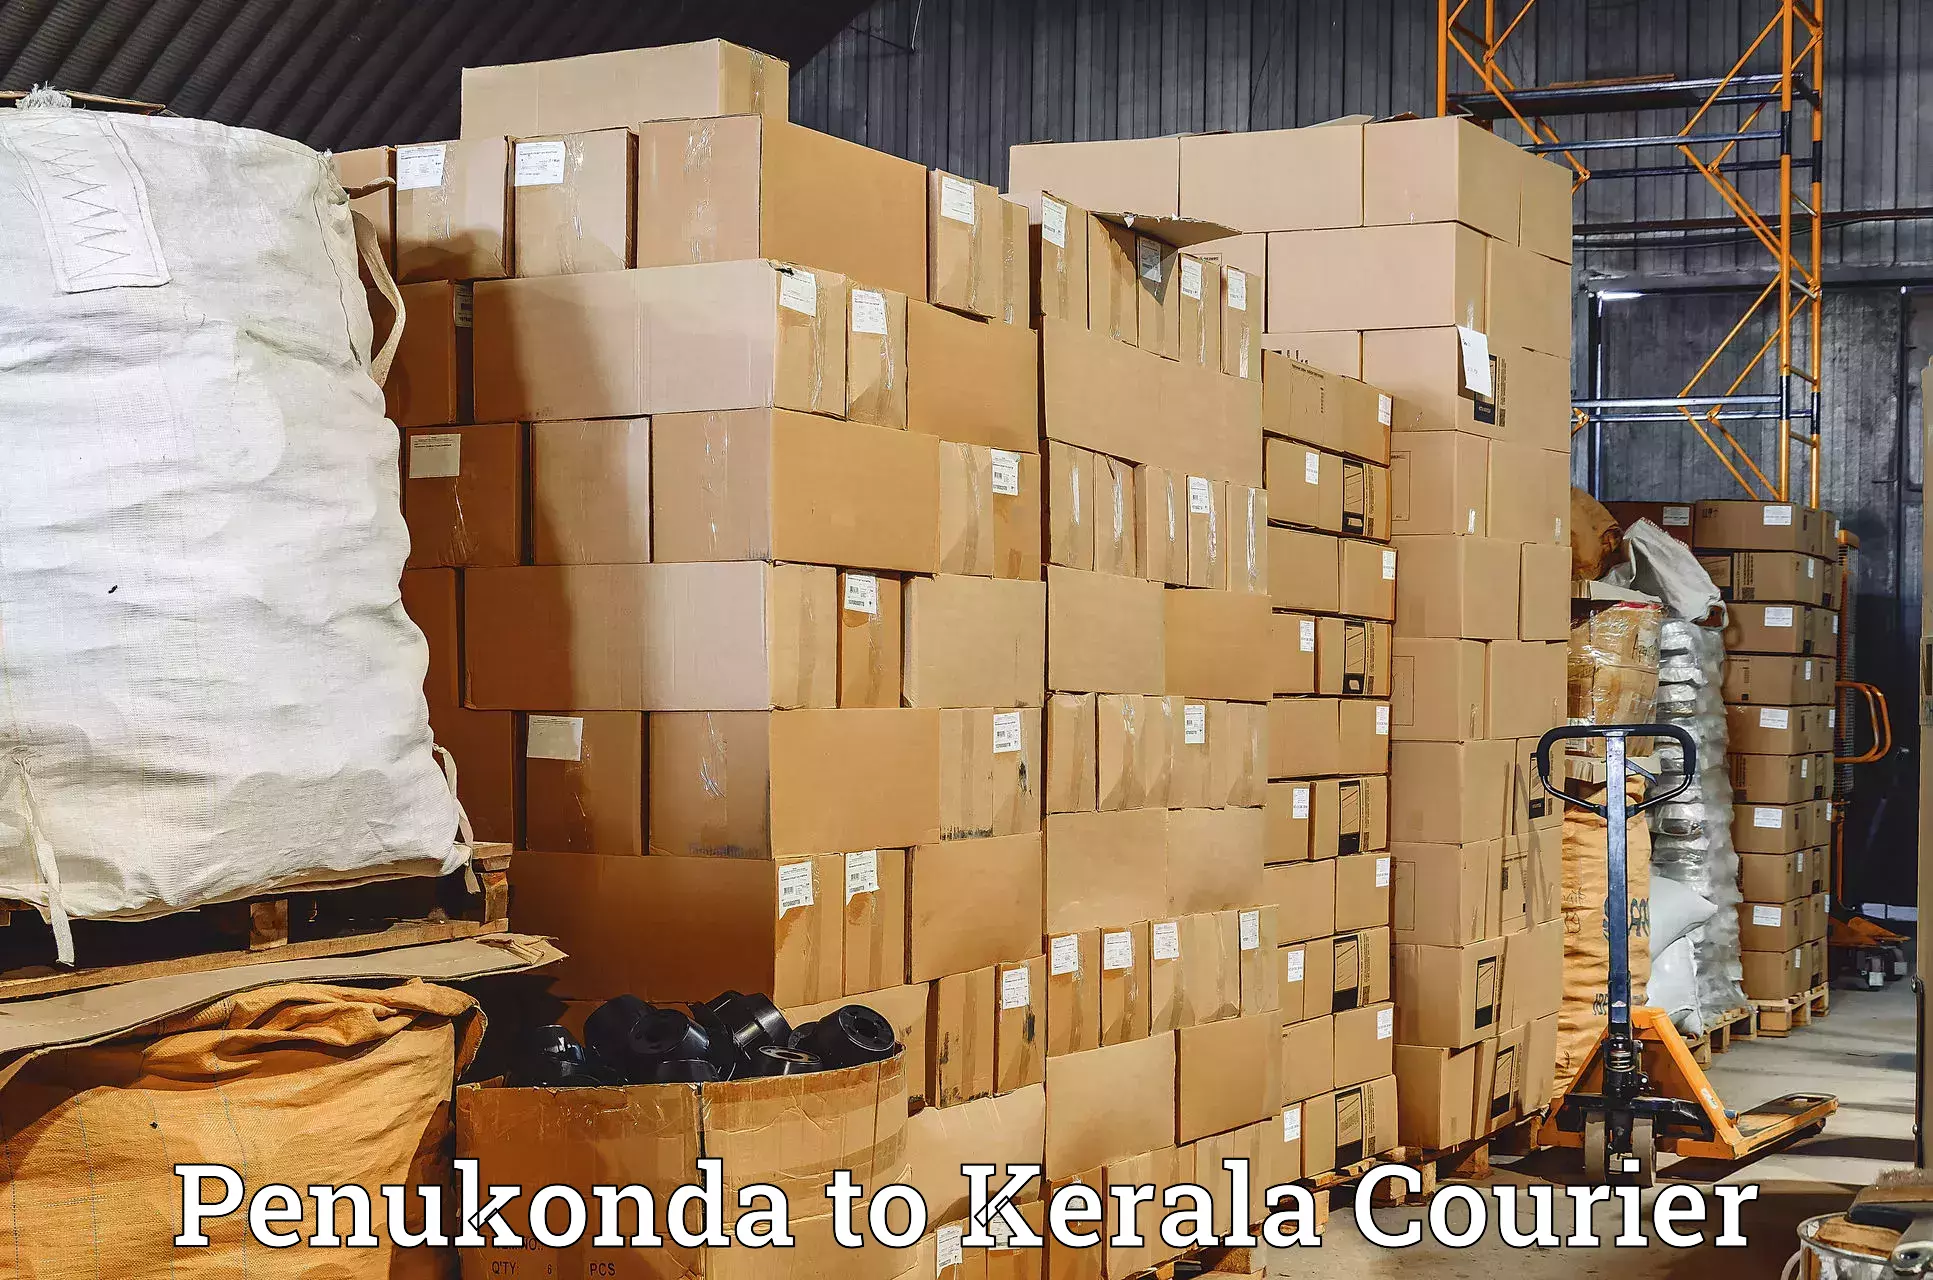 Courier service partnerships Penukonda to Irinjalakuda